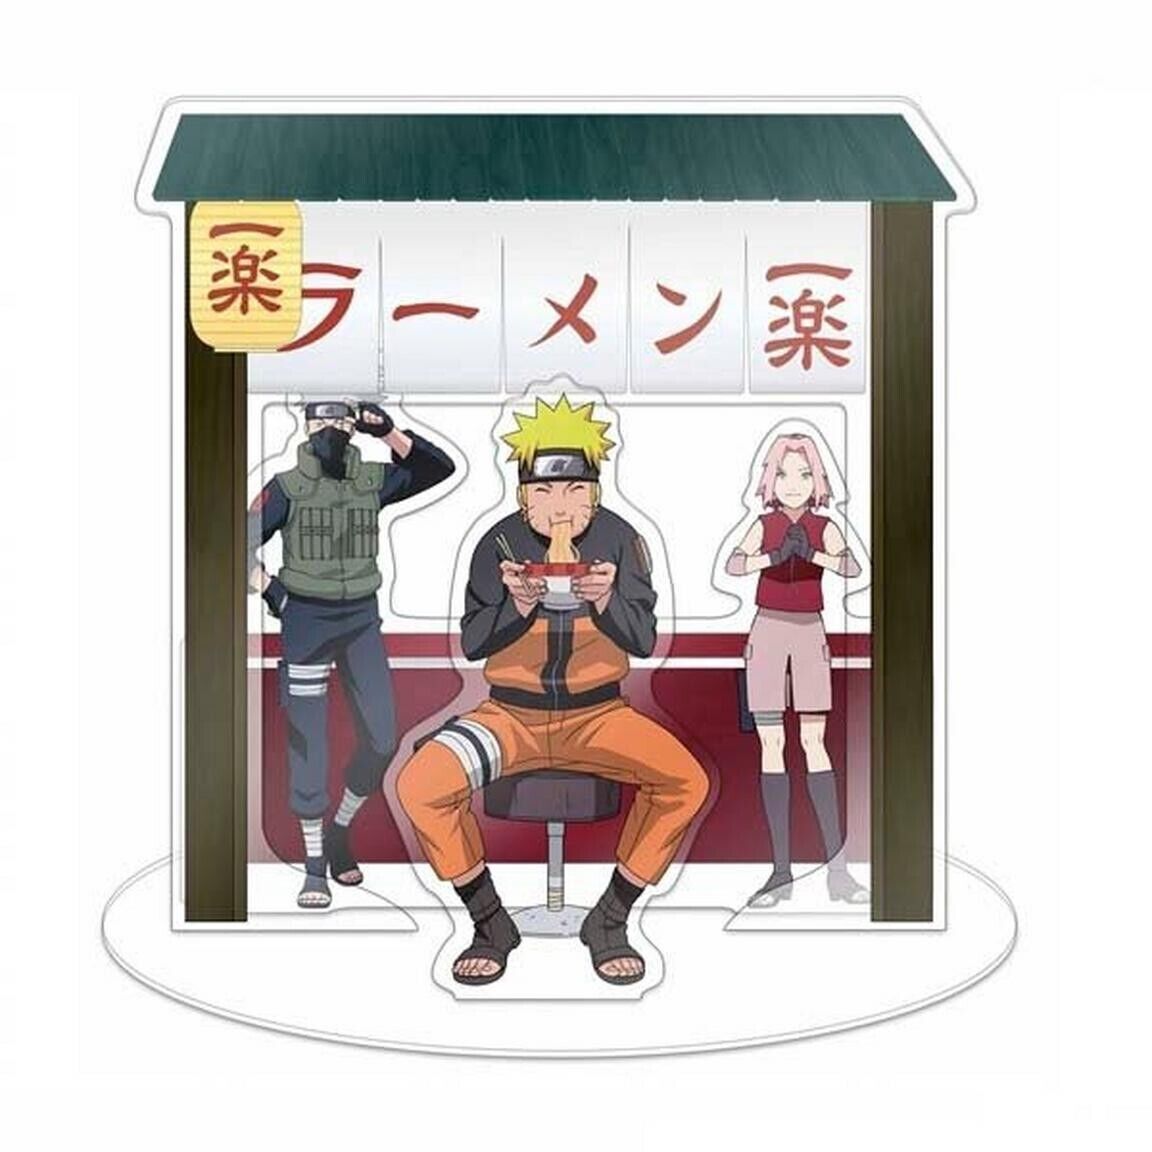 Naruto Shippuden Ichiraku Ramen Shop Acrylic Stand New